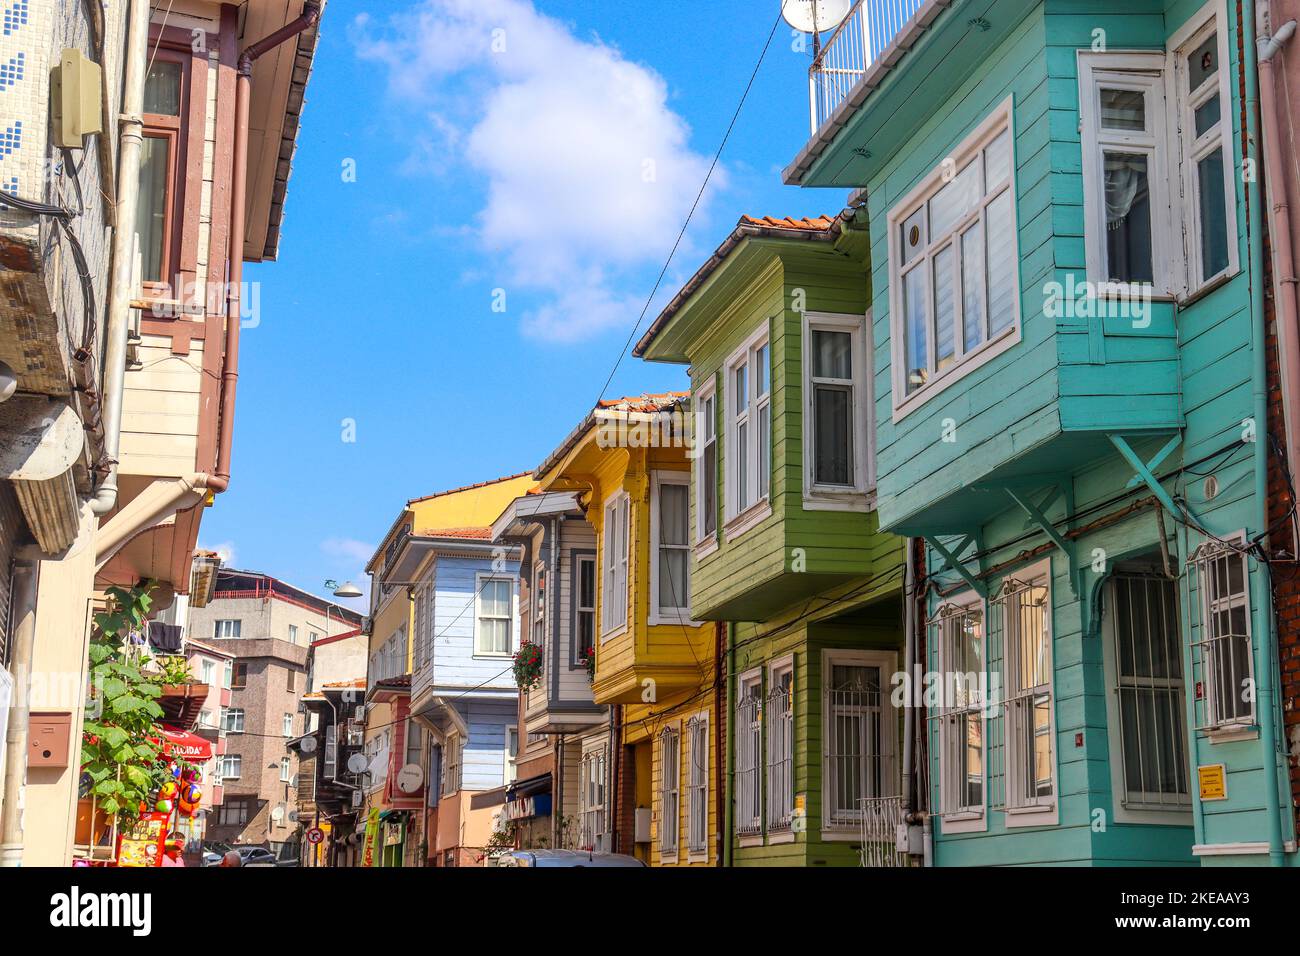 ISTANBUL/TURQUIE - 09 juillet 2022: Quartier d'istanbul avec des maisons colorées Banque D'Images